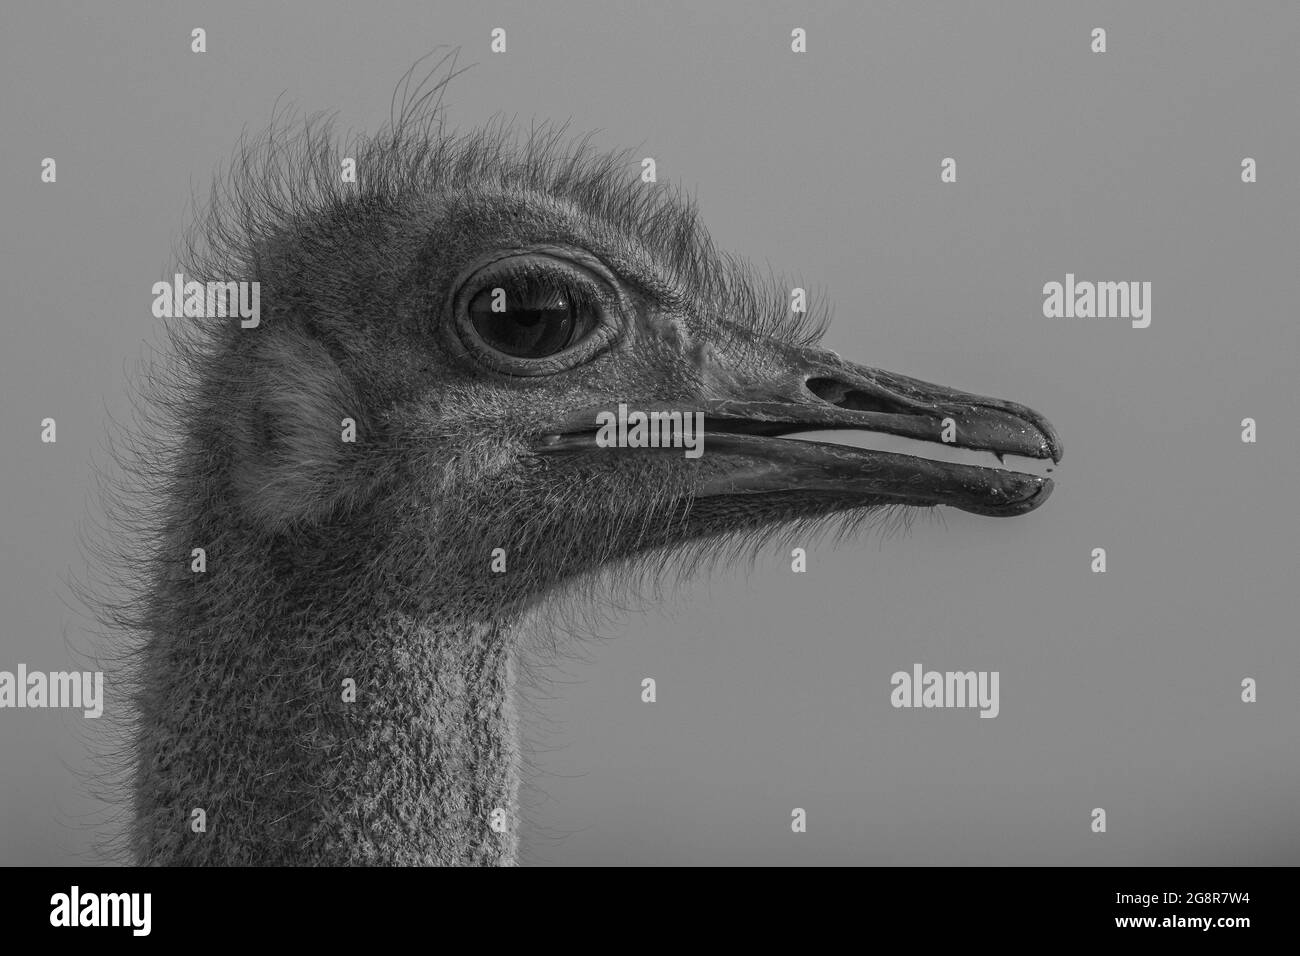 La testa di uno struzzo, Struthio camelus, profilo laterale, in bianco e nero. Foto Stock